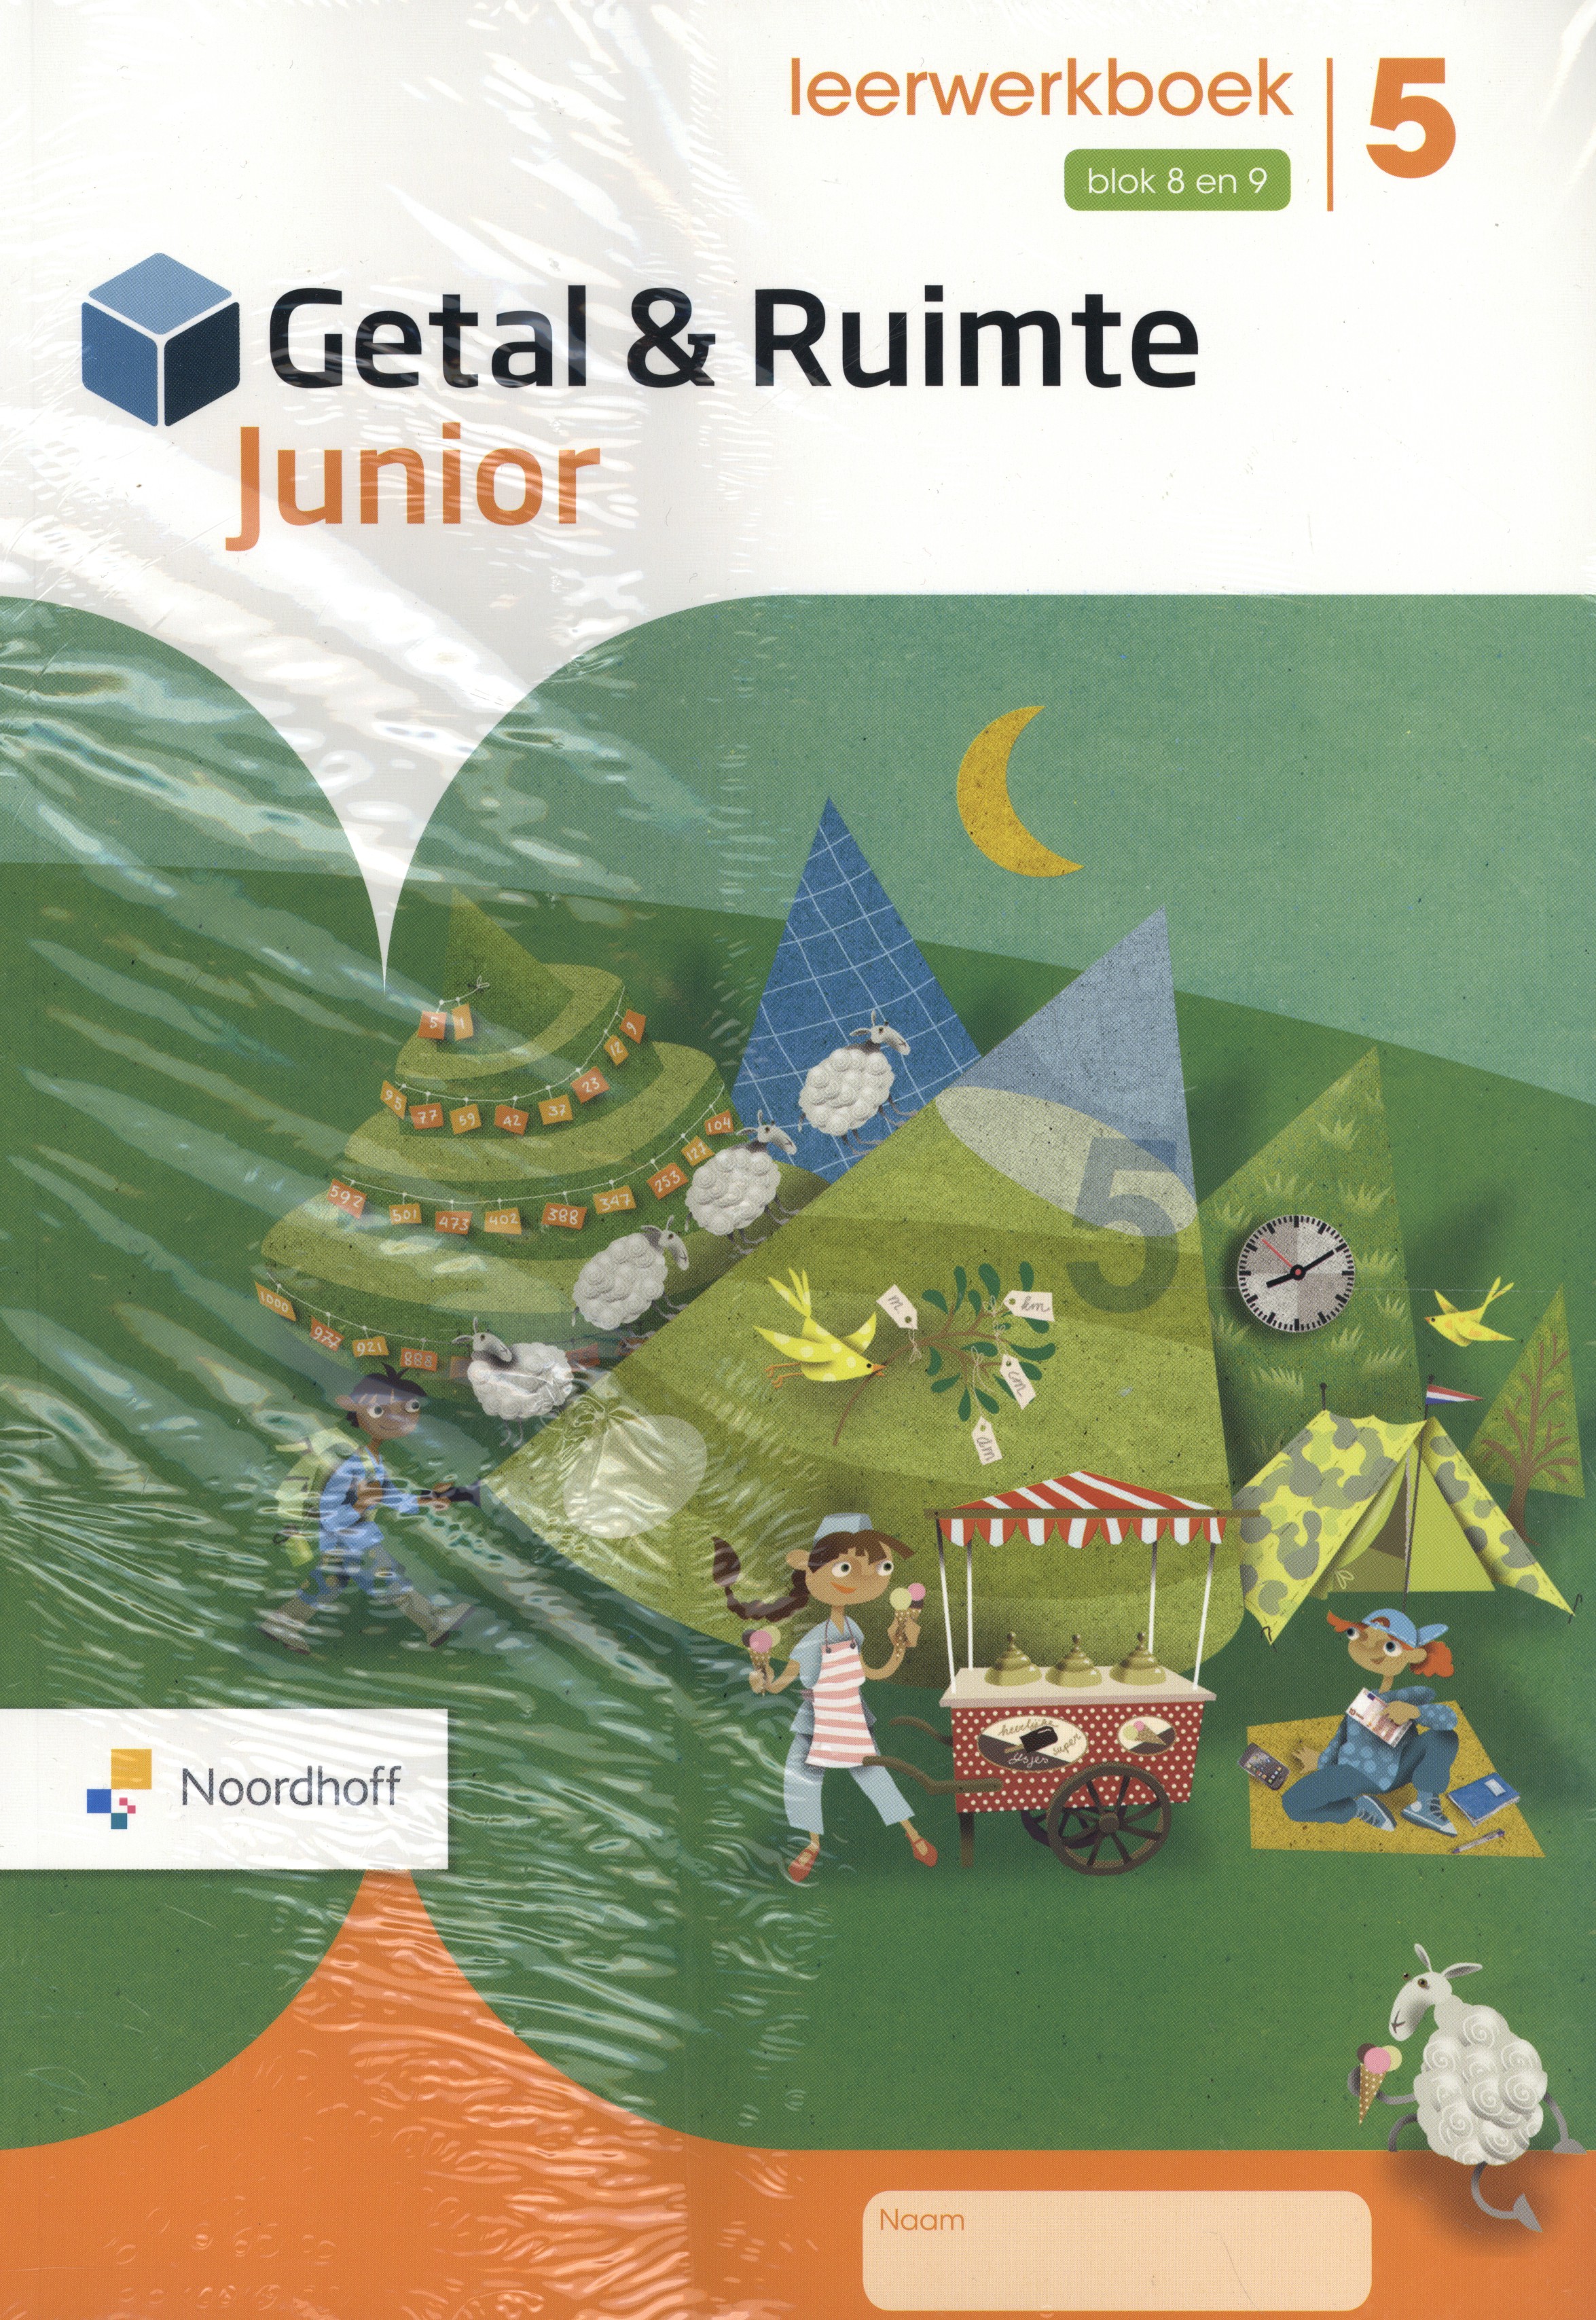 Getal & Ruimte Junior leerwerkboek groep 5 blok 8 en 9_set a 5